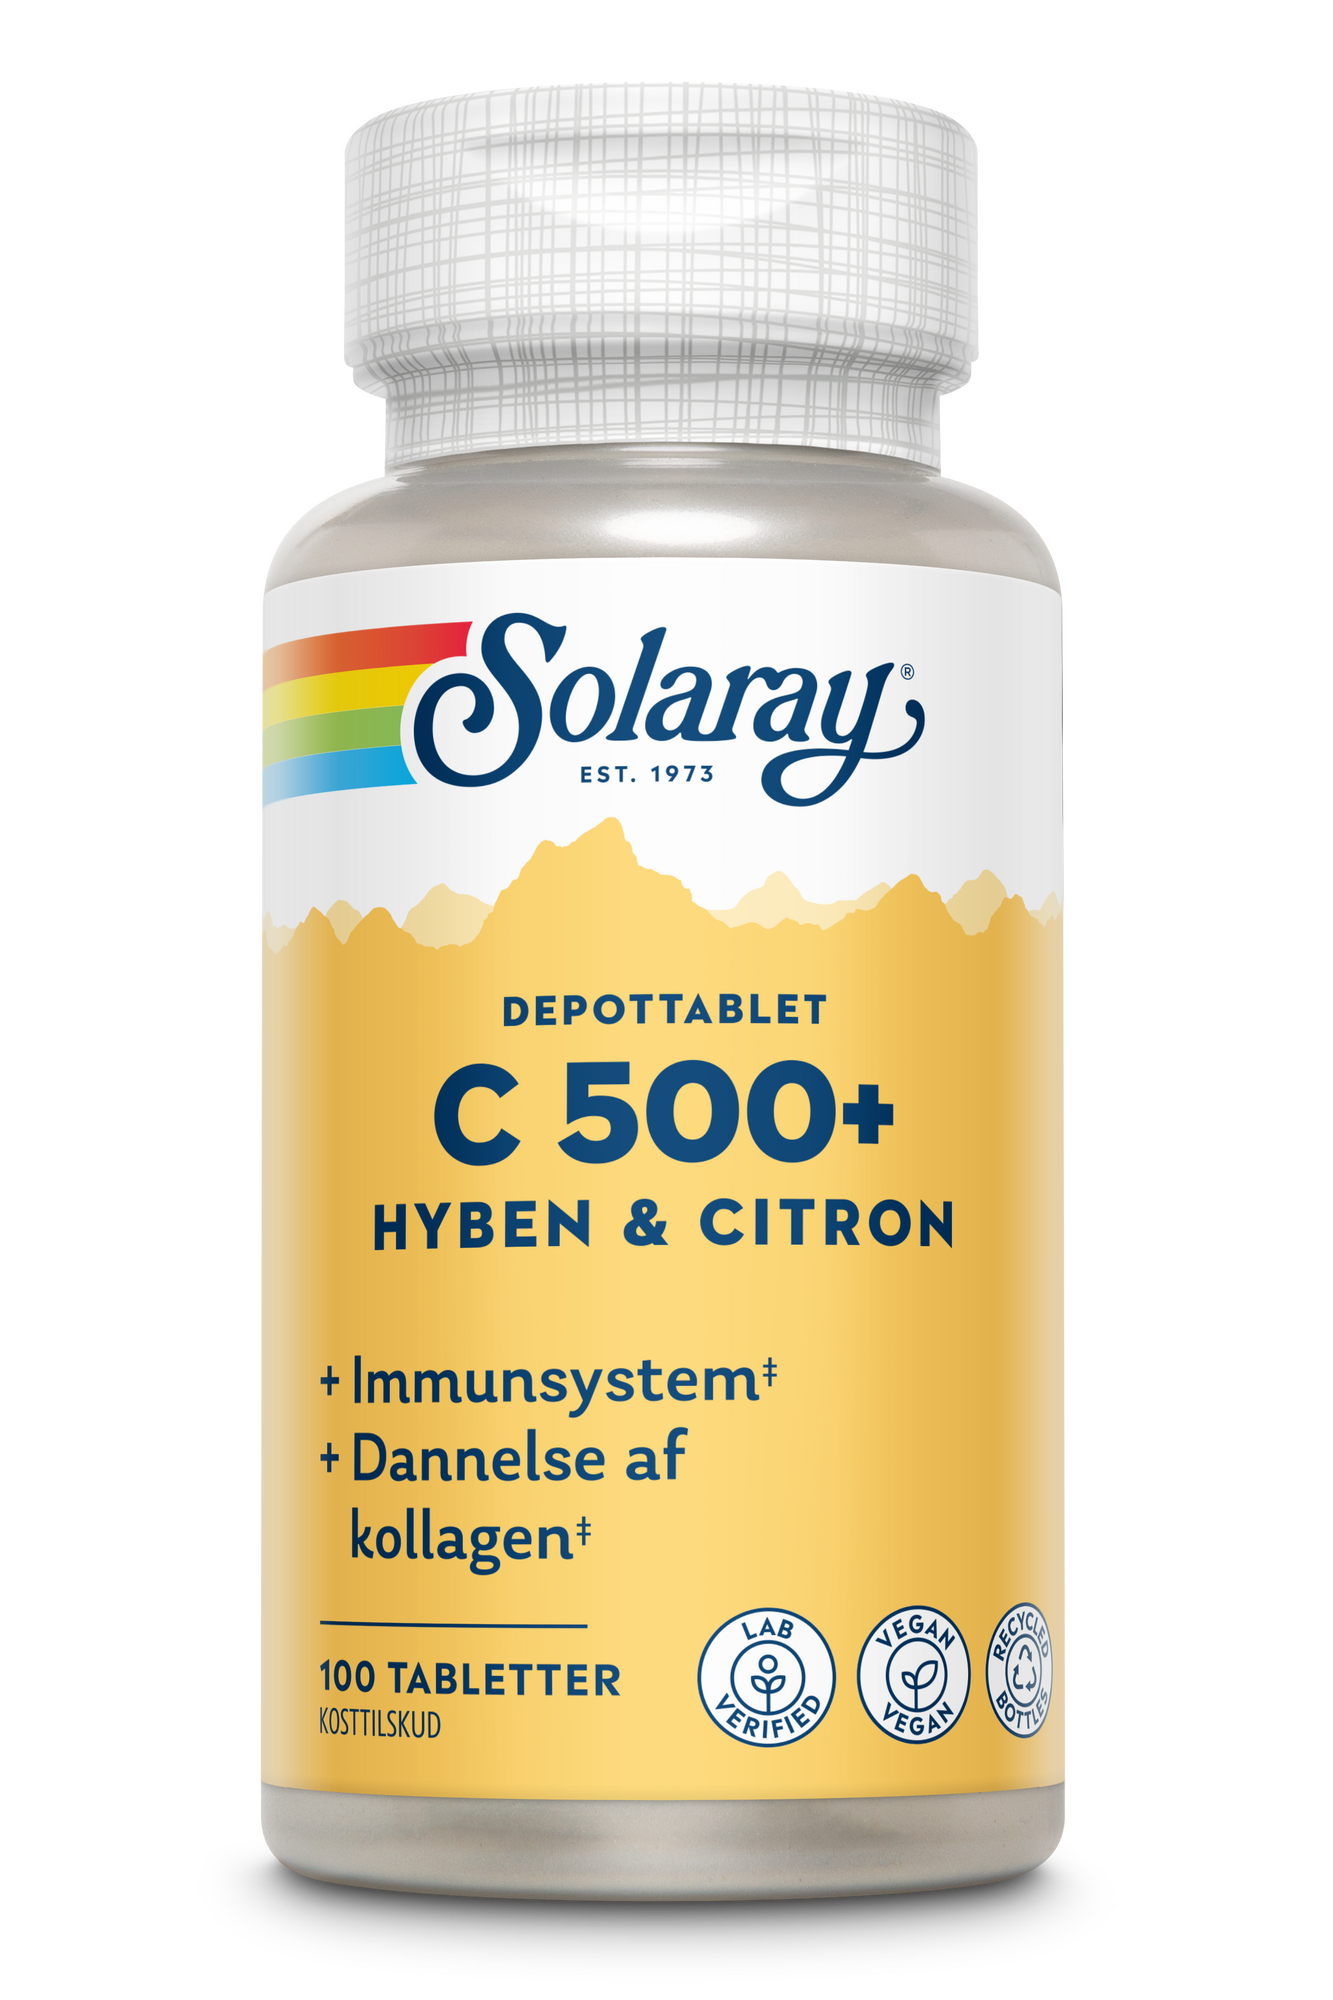 Se Solaray C-vitamin C500+ hyben, citron 100 tabletter hos Duft og Natur